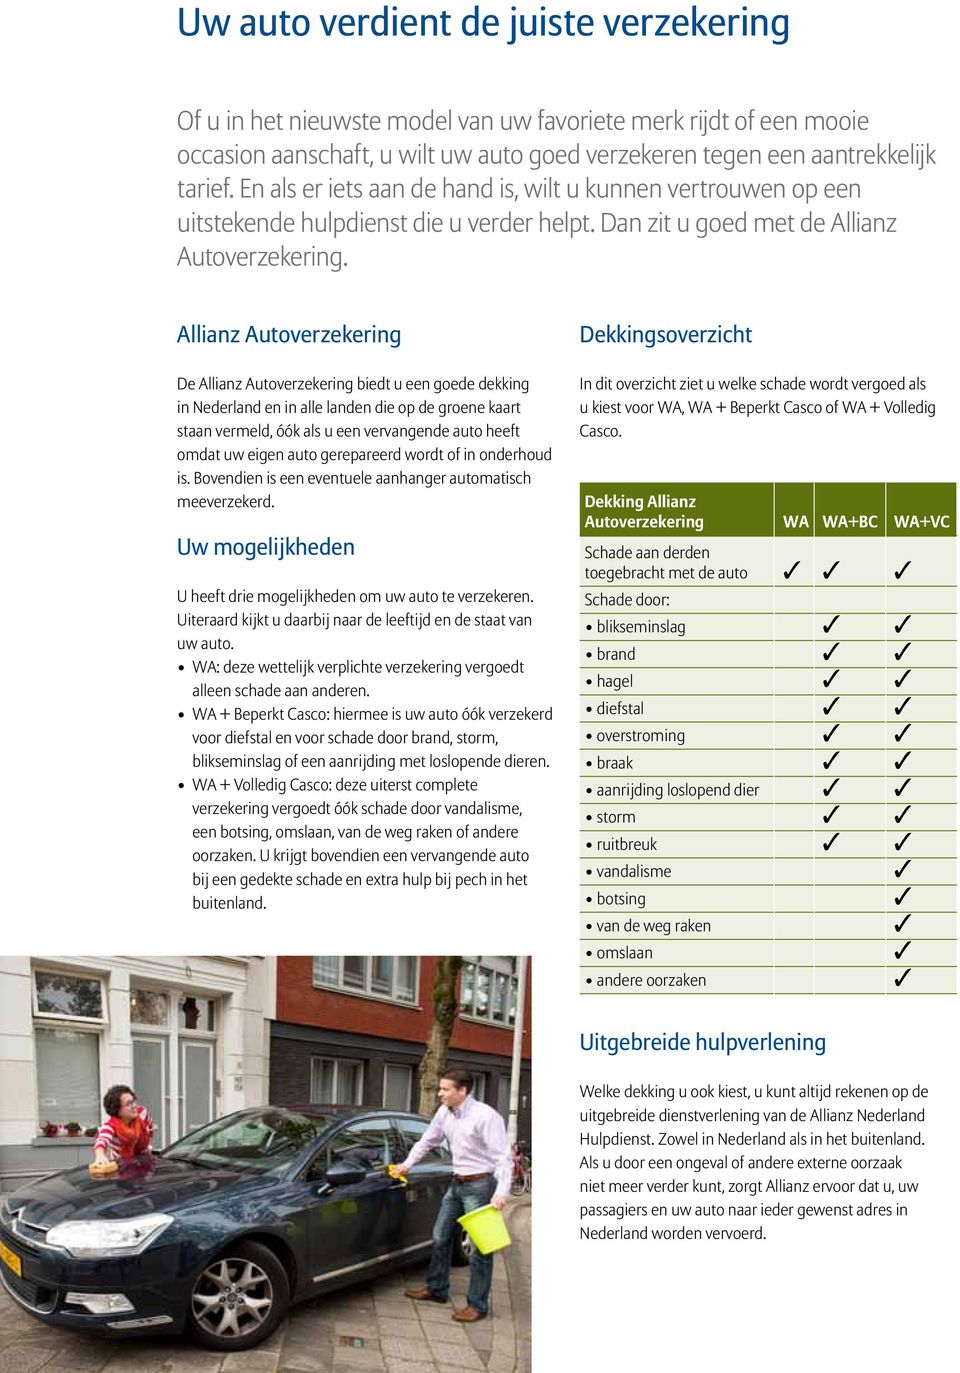 Allianz Autoverzekering De Allianz Autoverzekering biedt u een goede dekking in Nederland en in alle landen die op de groene kaart staan vermeld, óók als u een vervangende auto heeft omdat uw eigen